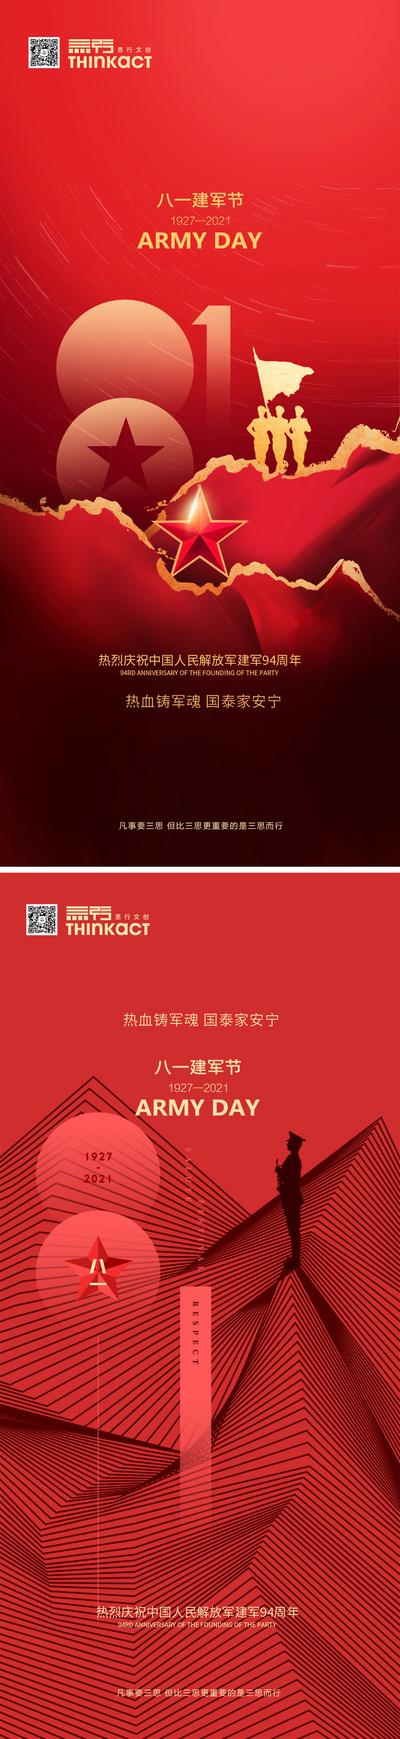 南门网 海报 公历节日 建军节 94周年 红色 军人 系列